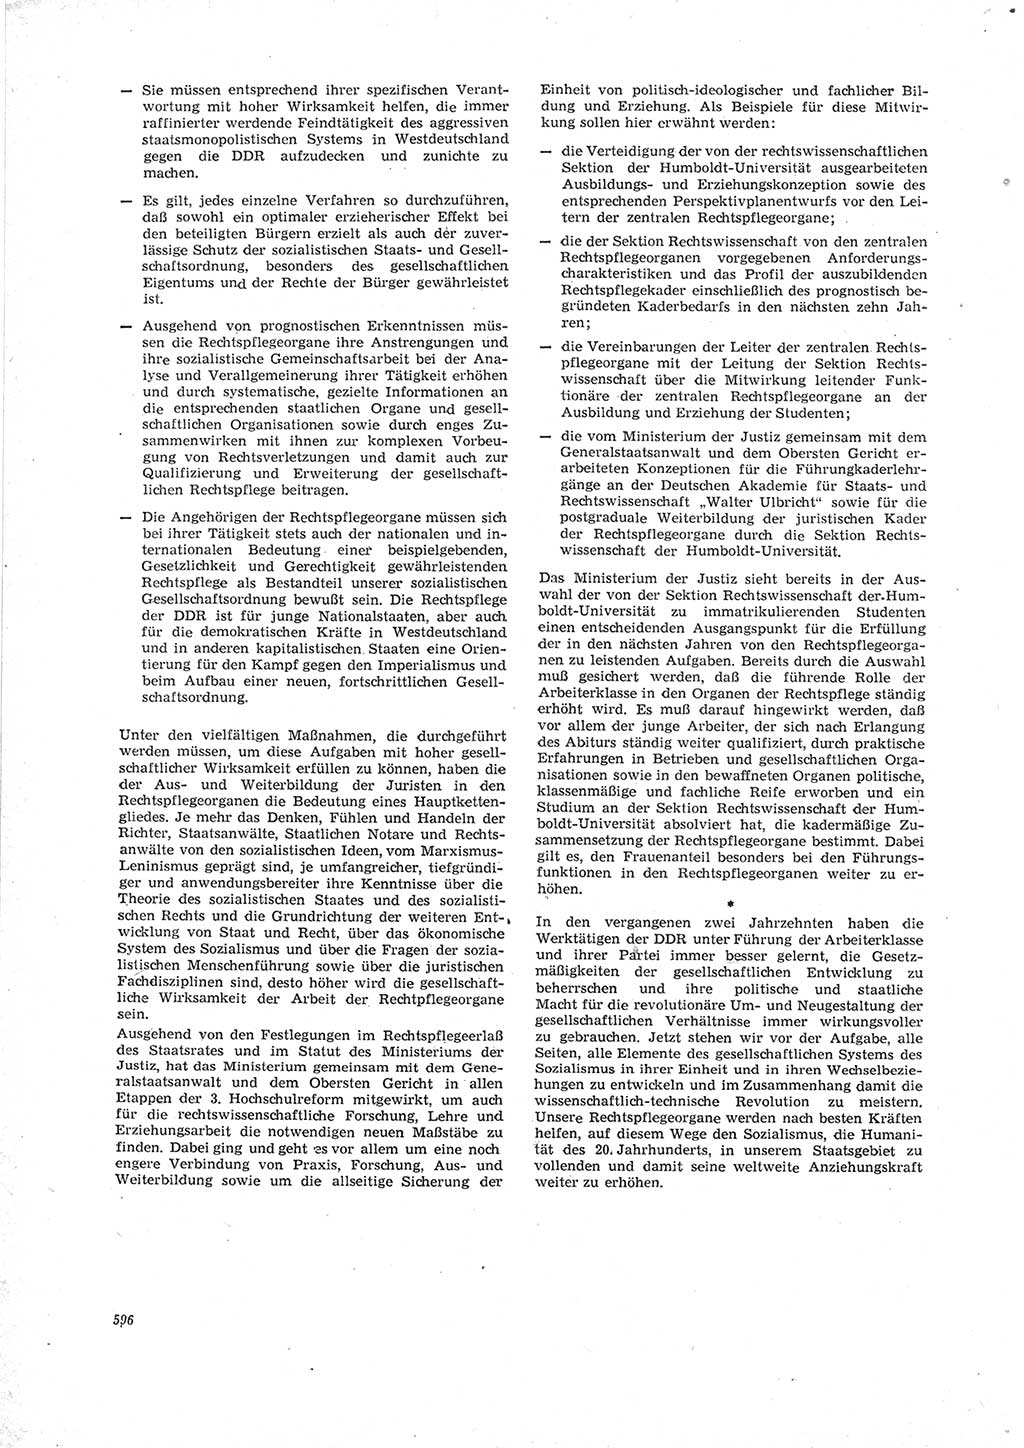 Neue Justiz (NJ), Zeitschrift für Recht und Rechtswissenschaft [Deutsche Demokratische Republik (DDR)], 23. Jahrgang 1969, Seite 596 (NJ DDR 1969, S. 596)